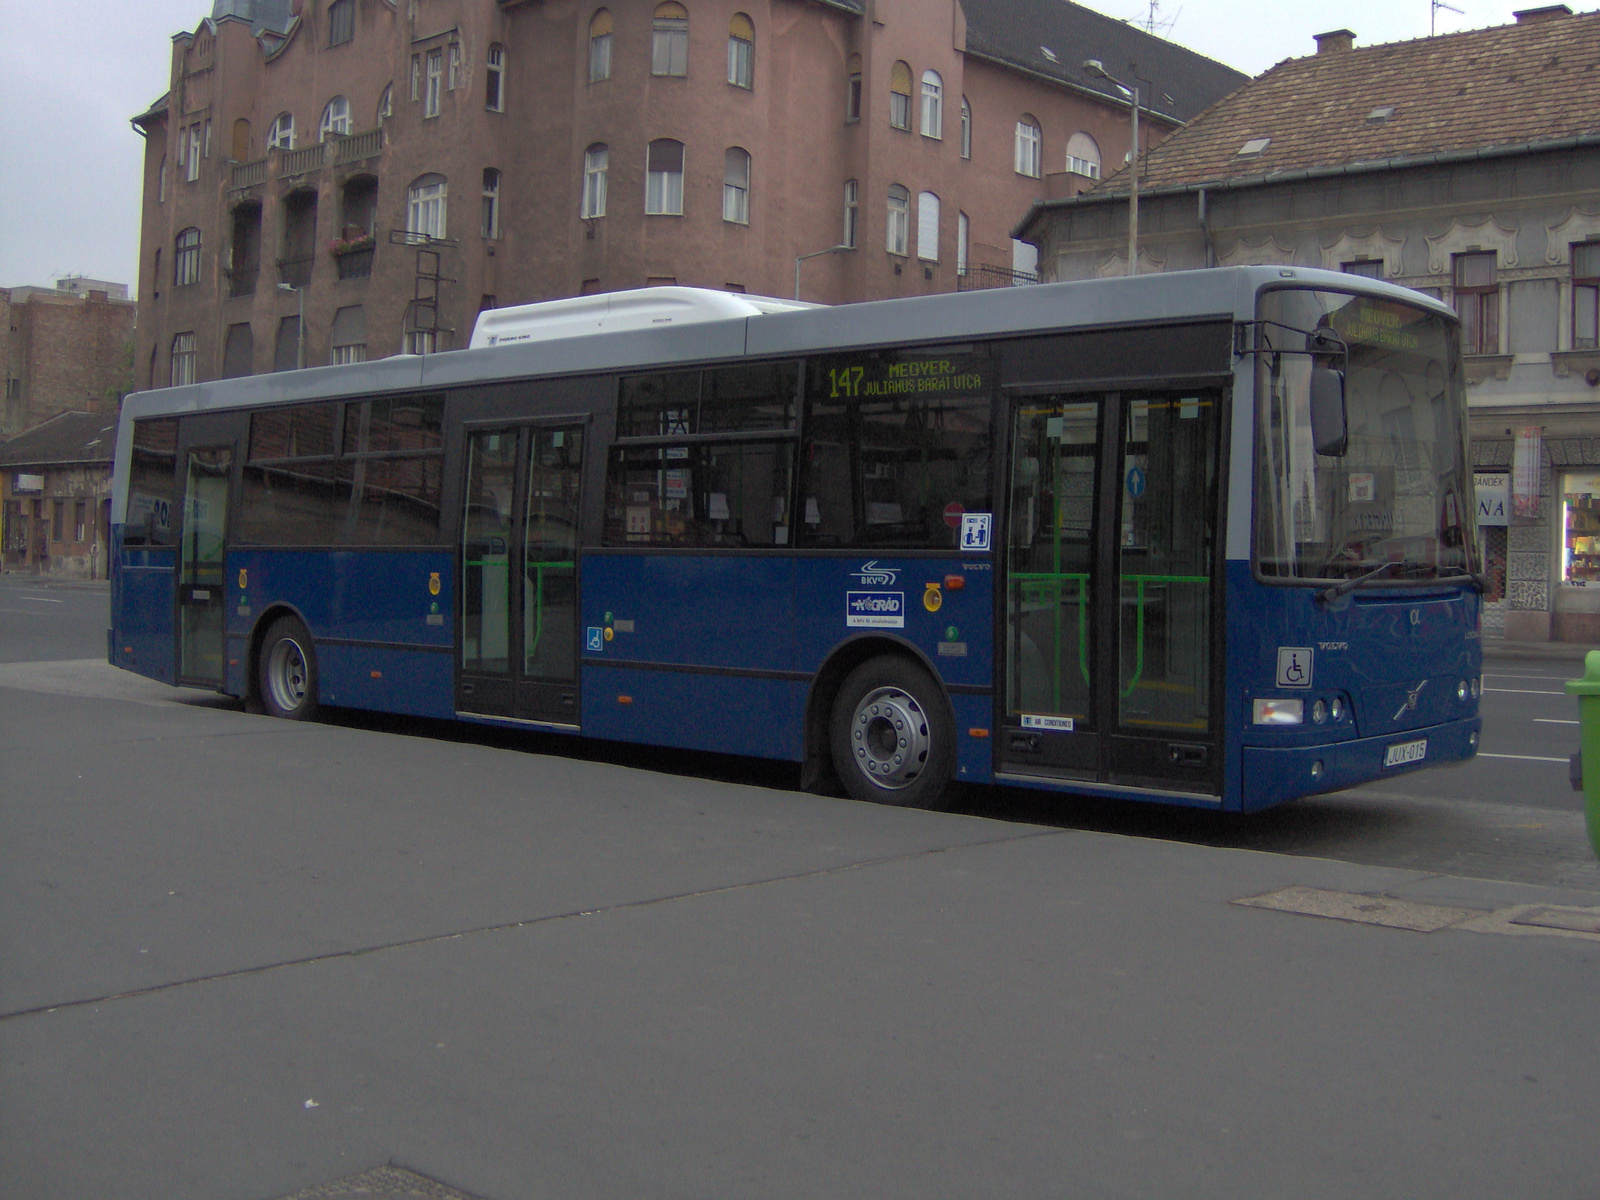 Busz JUX-015 2-Újpest-Központ